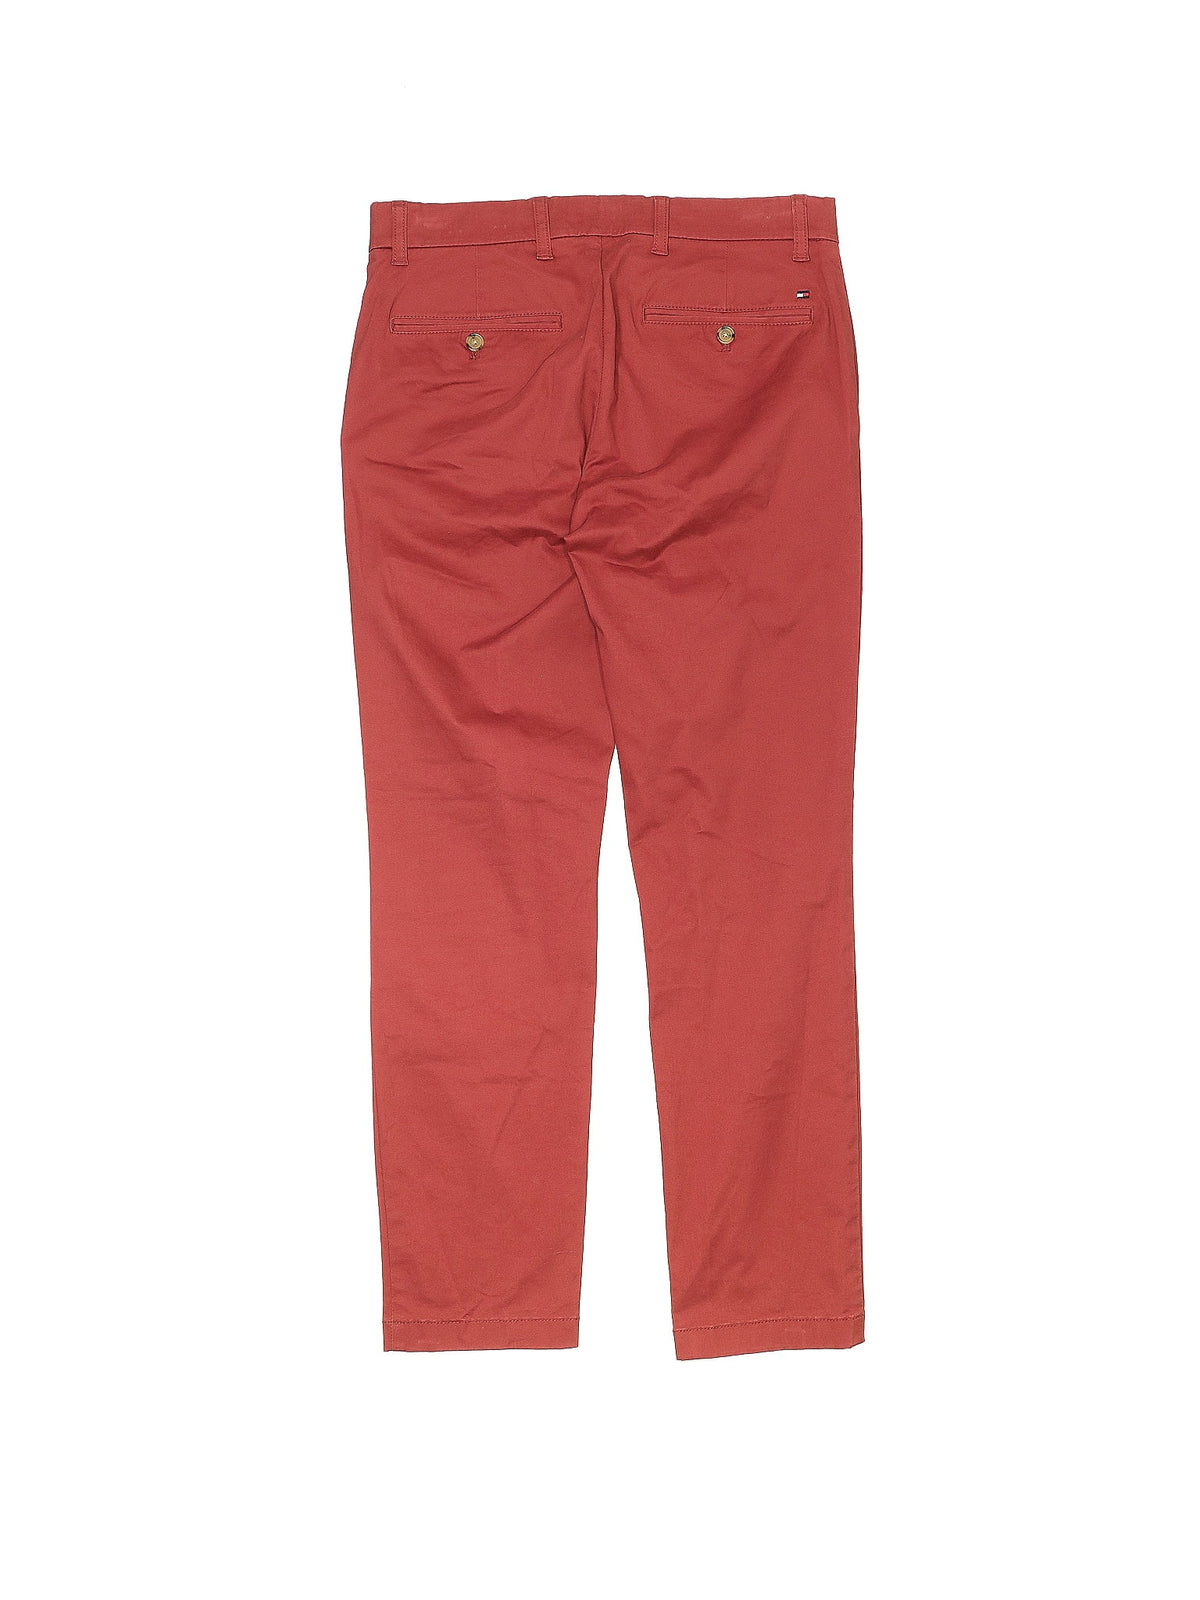 Khaki/Chino Pants size - 29 (W29 L30)